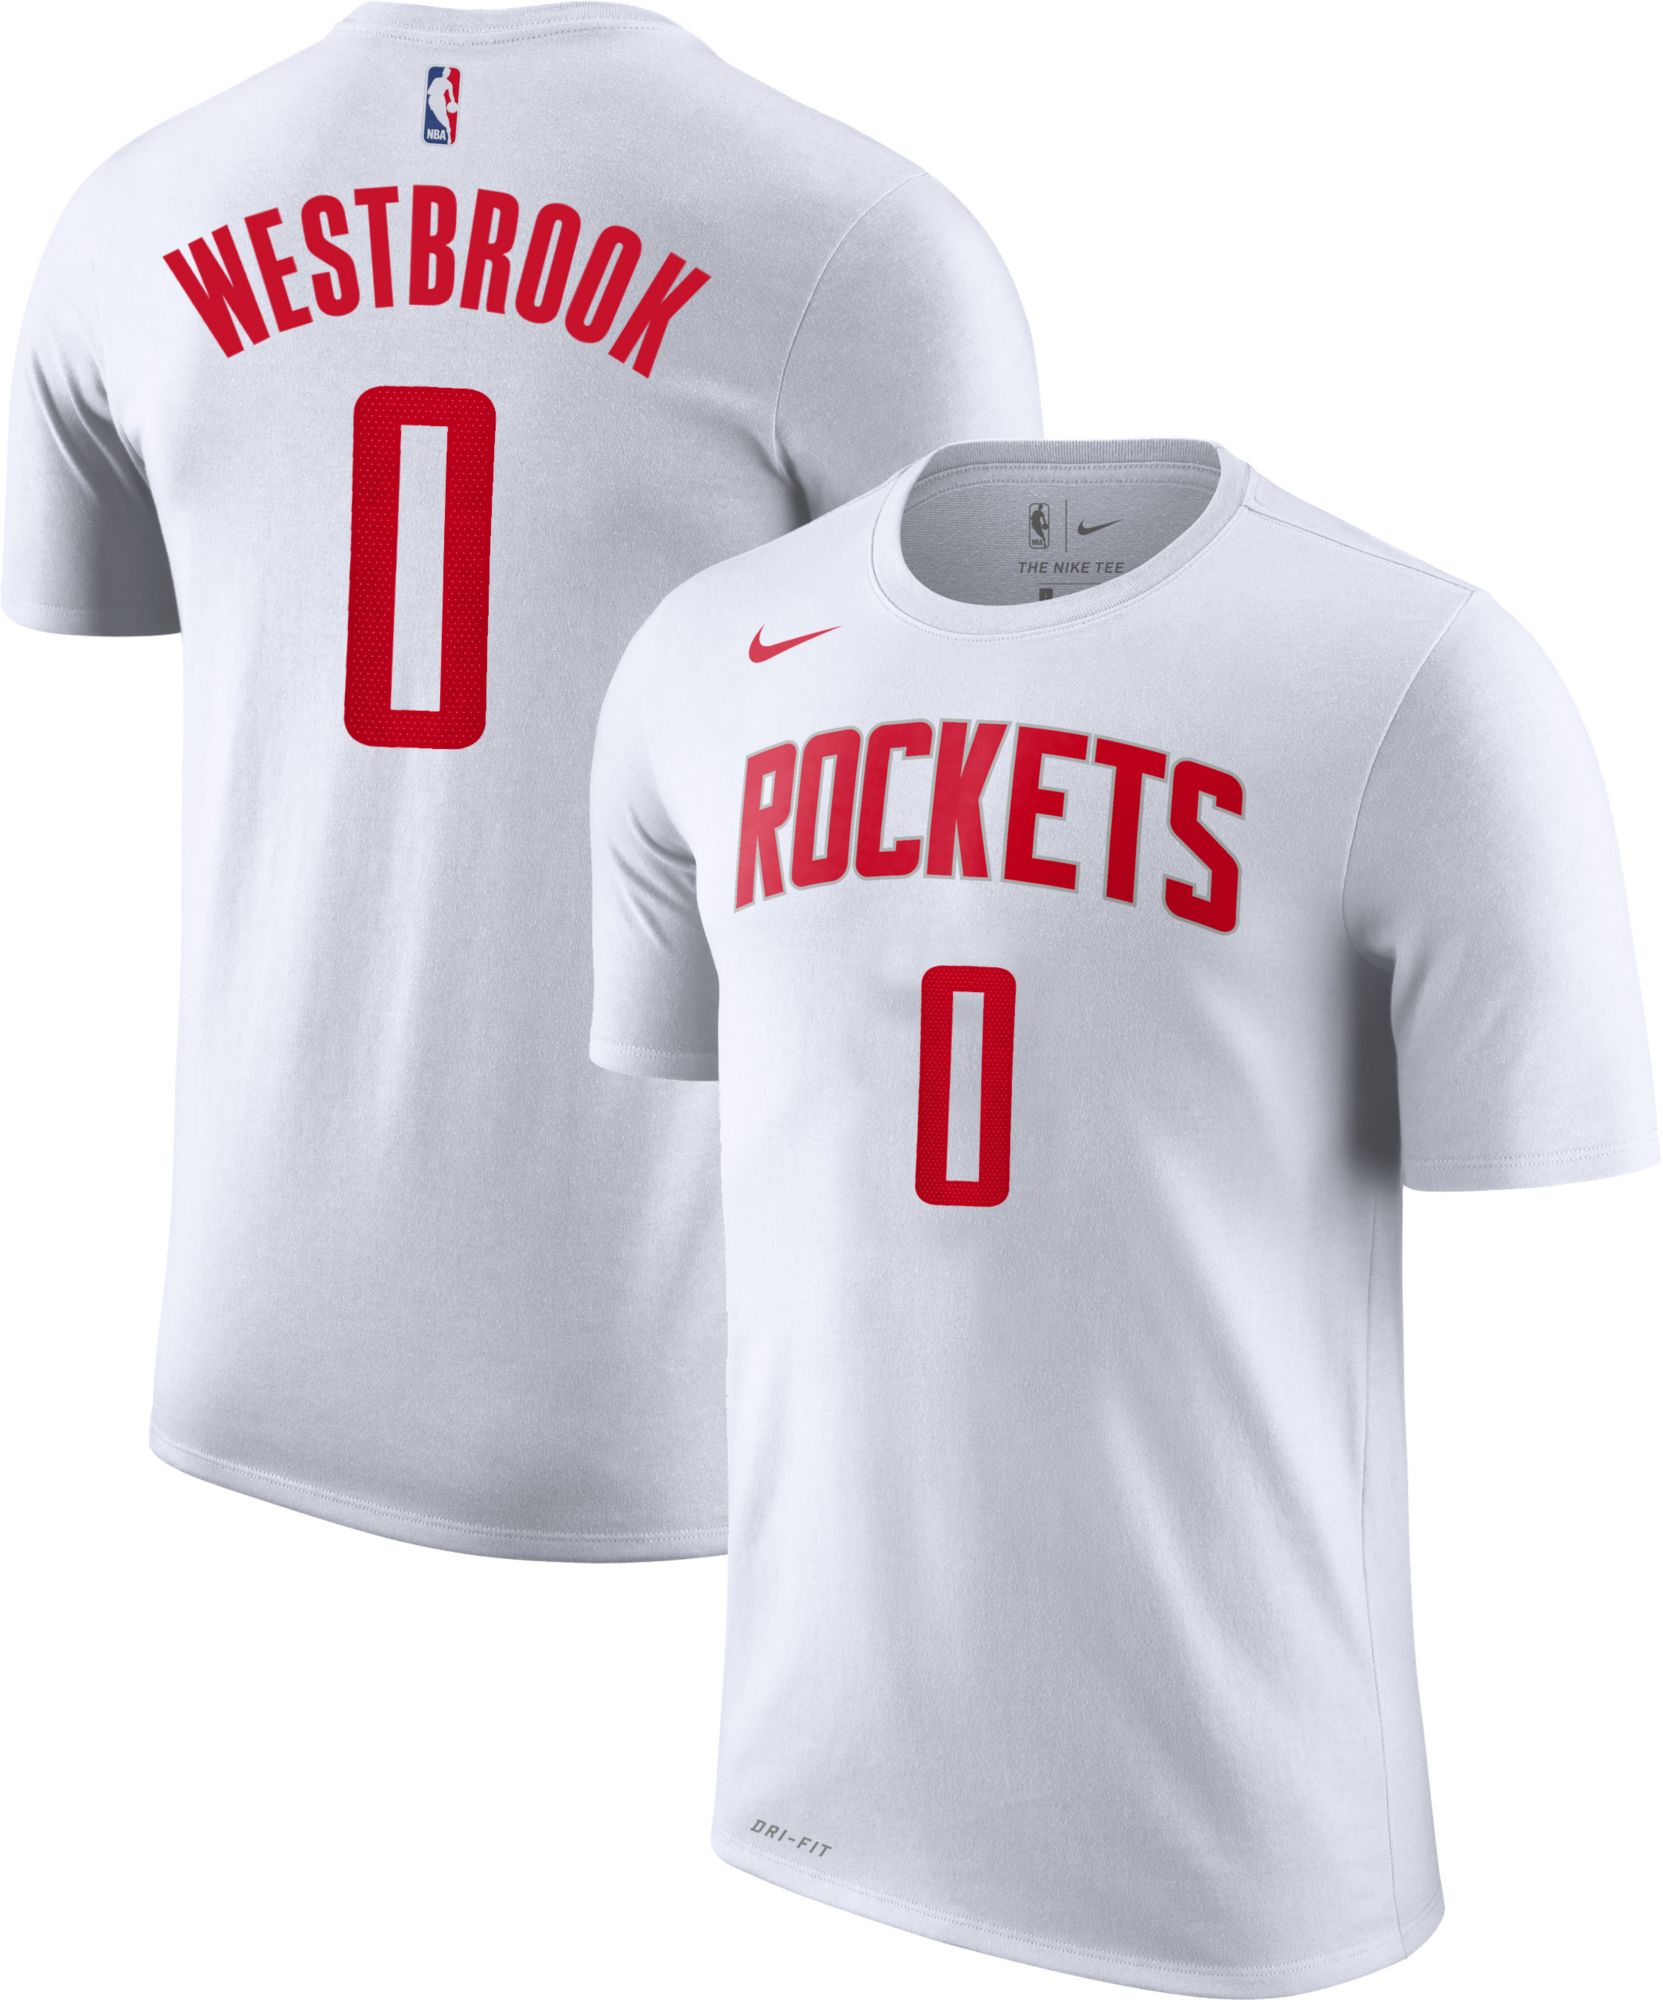 westbrook black rockets jersey